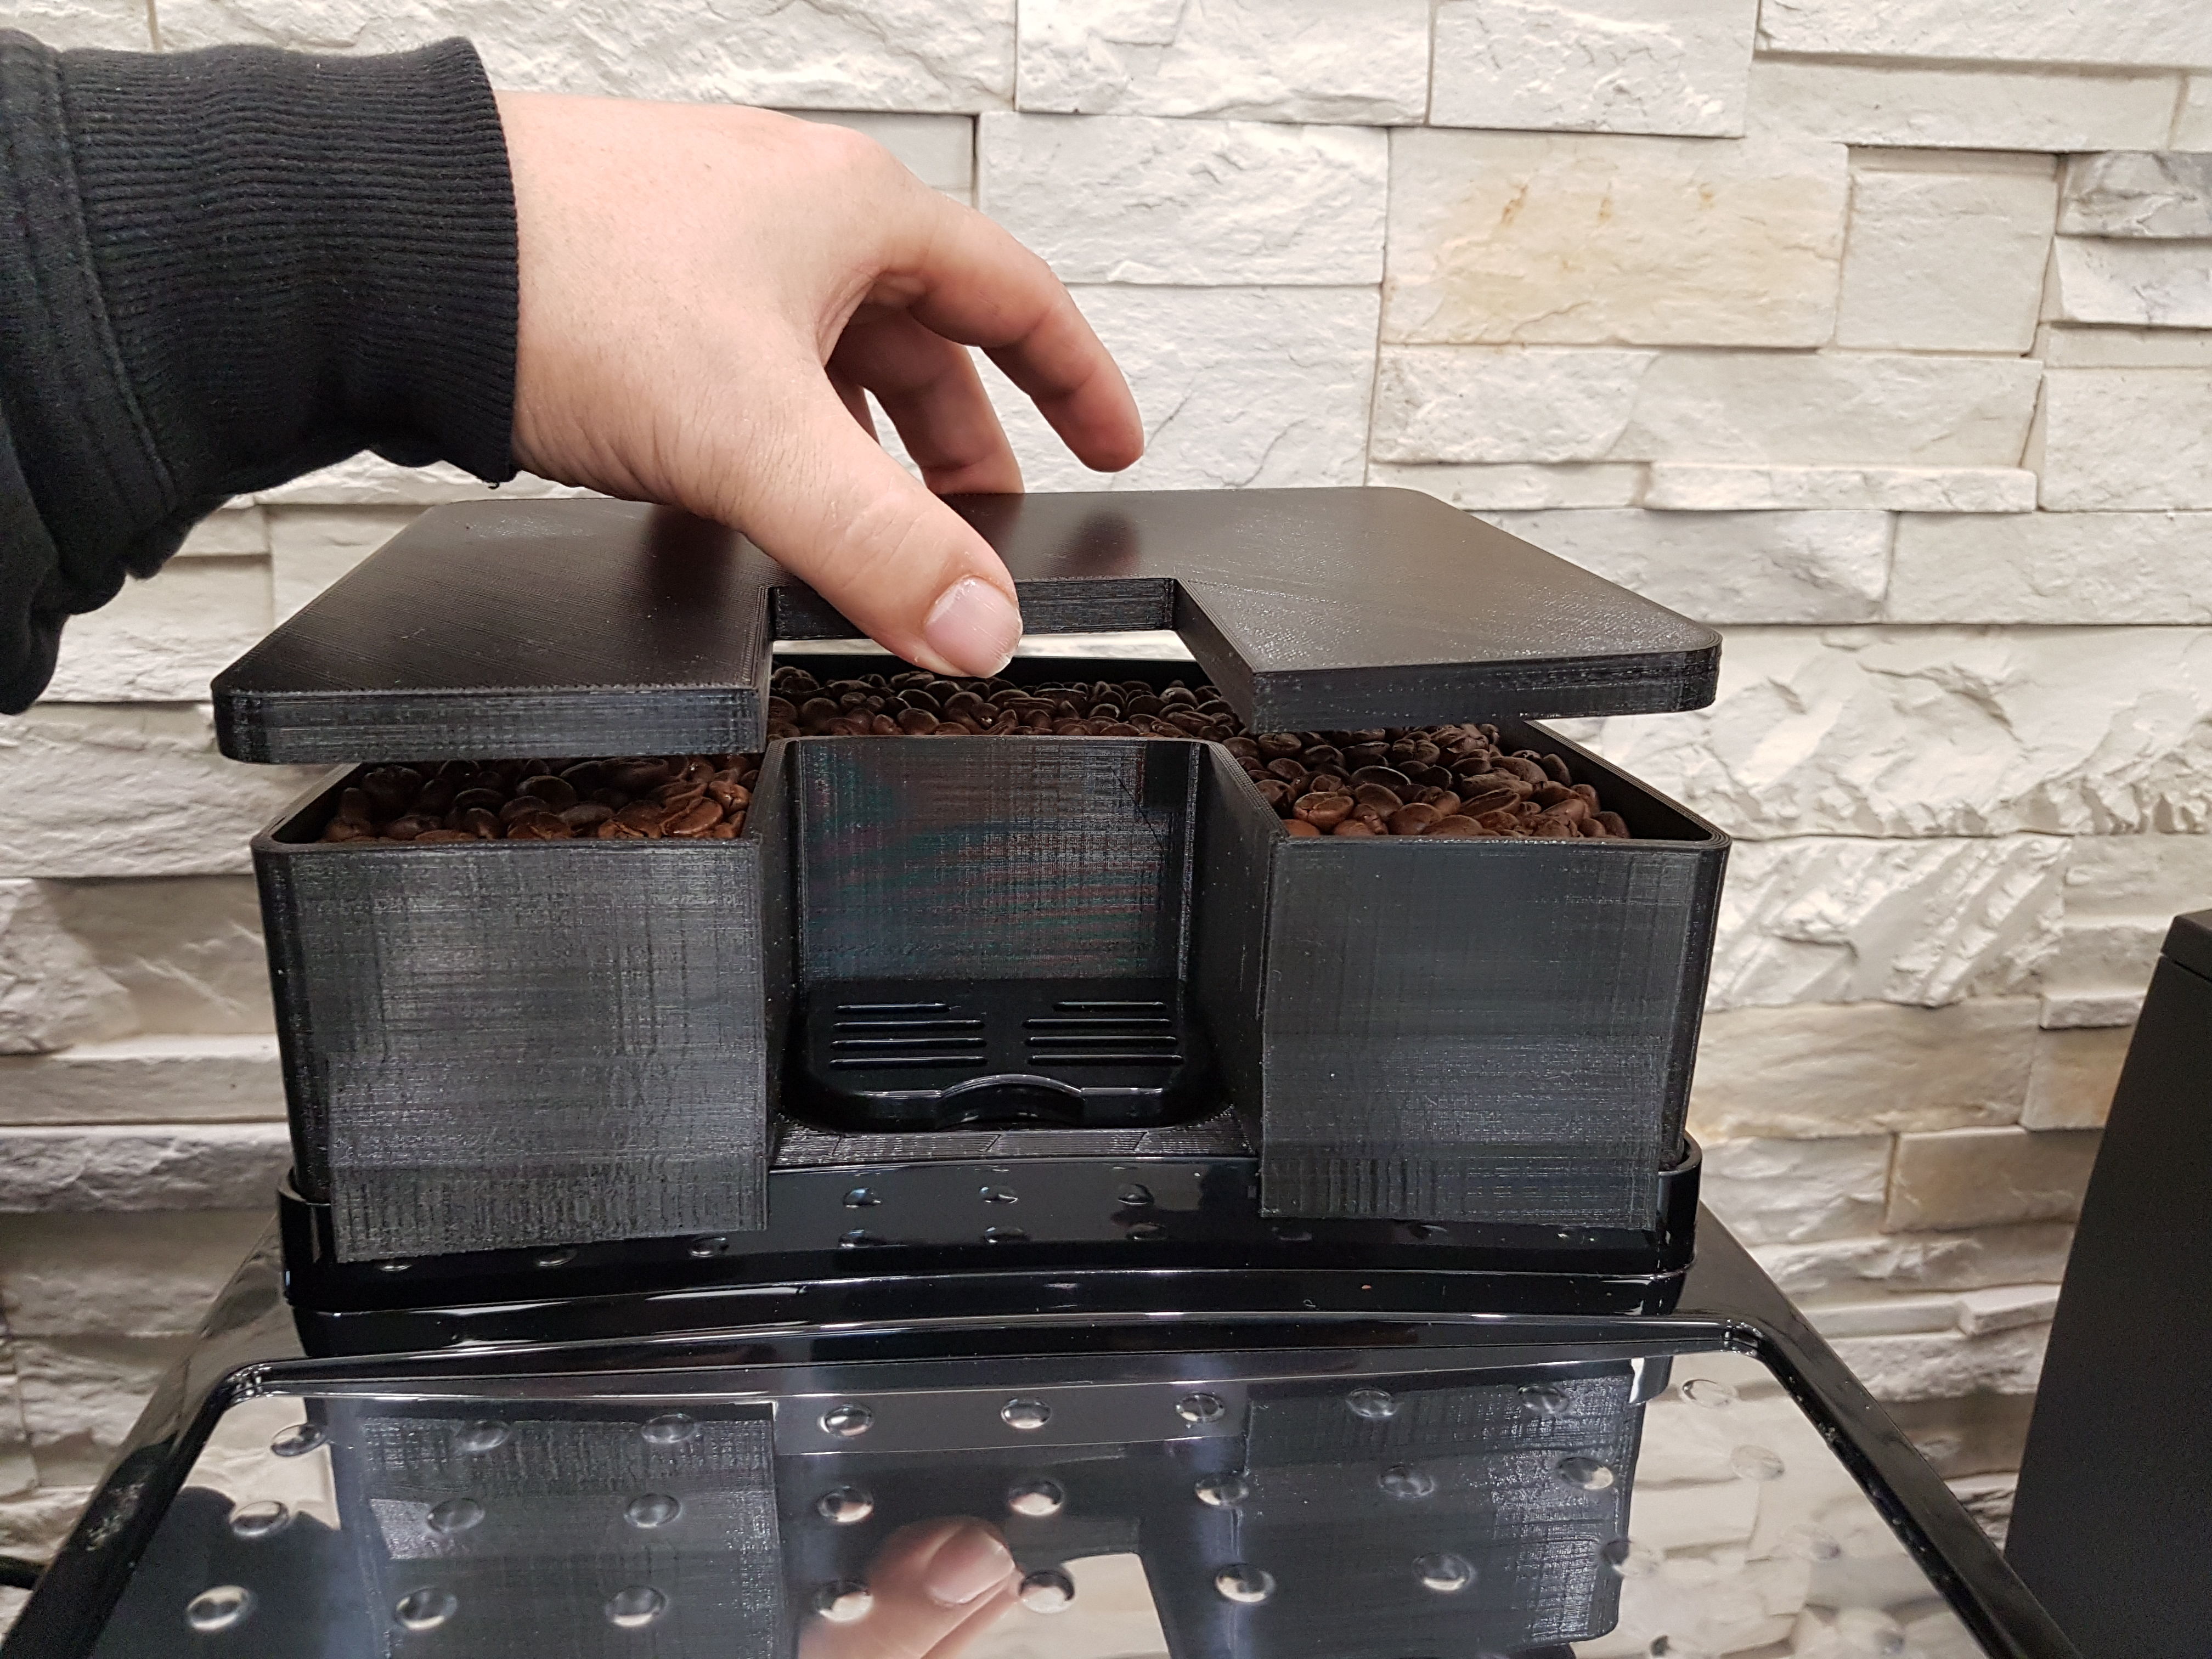 Bohnenbehälter Erweiterung für 400 gr mehr Bohnenkapazität passend für DeLonghi Magnifica S Kaffeeevollautomaten